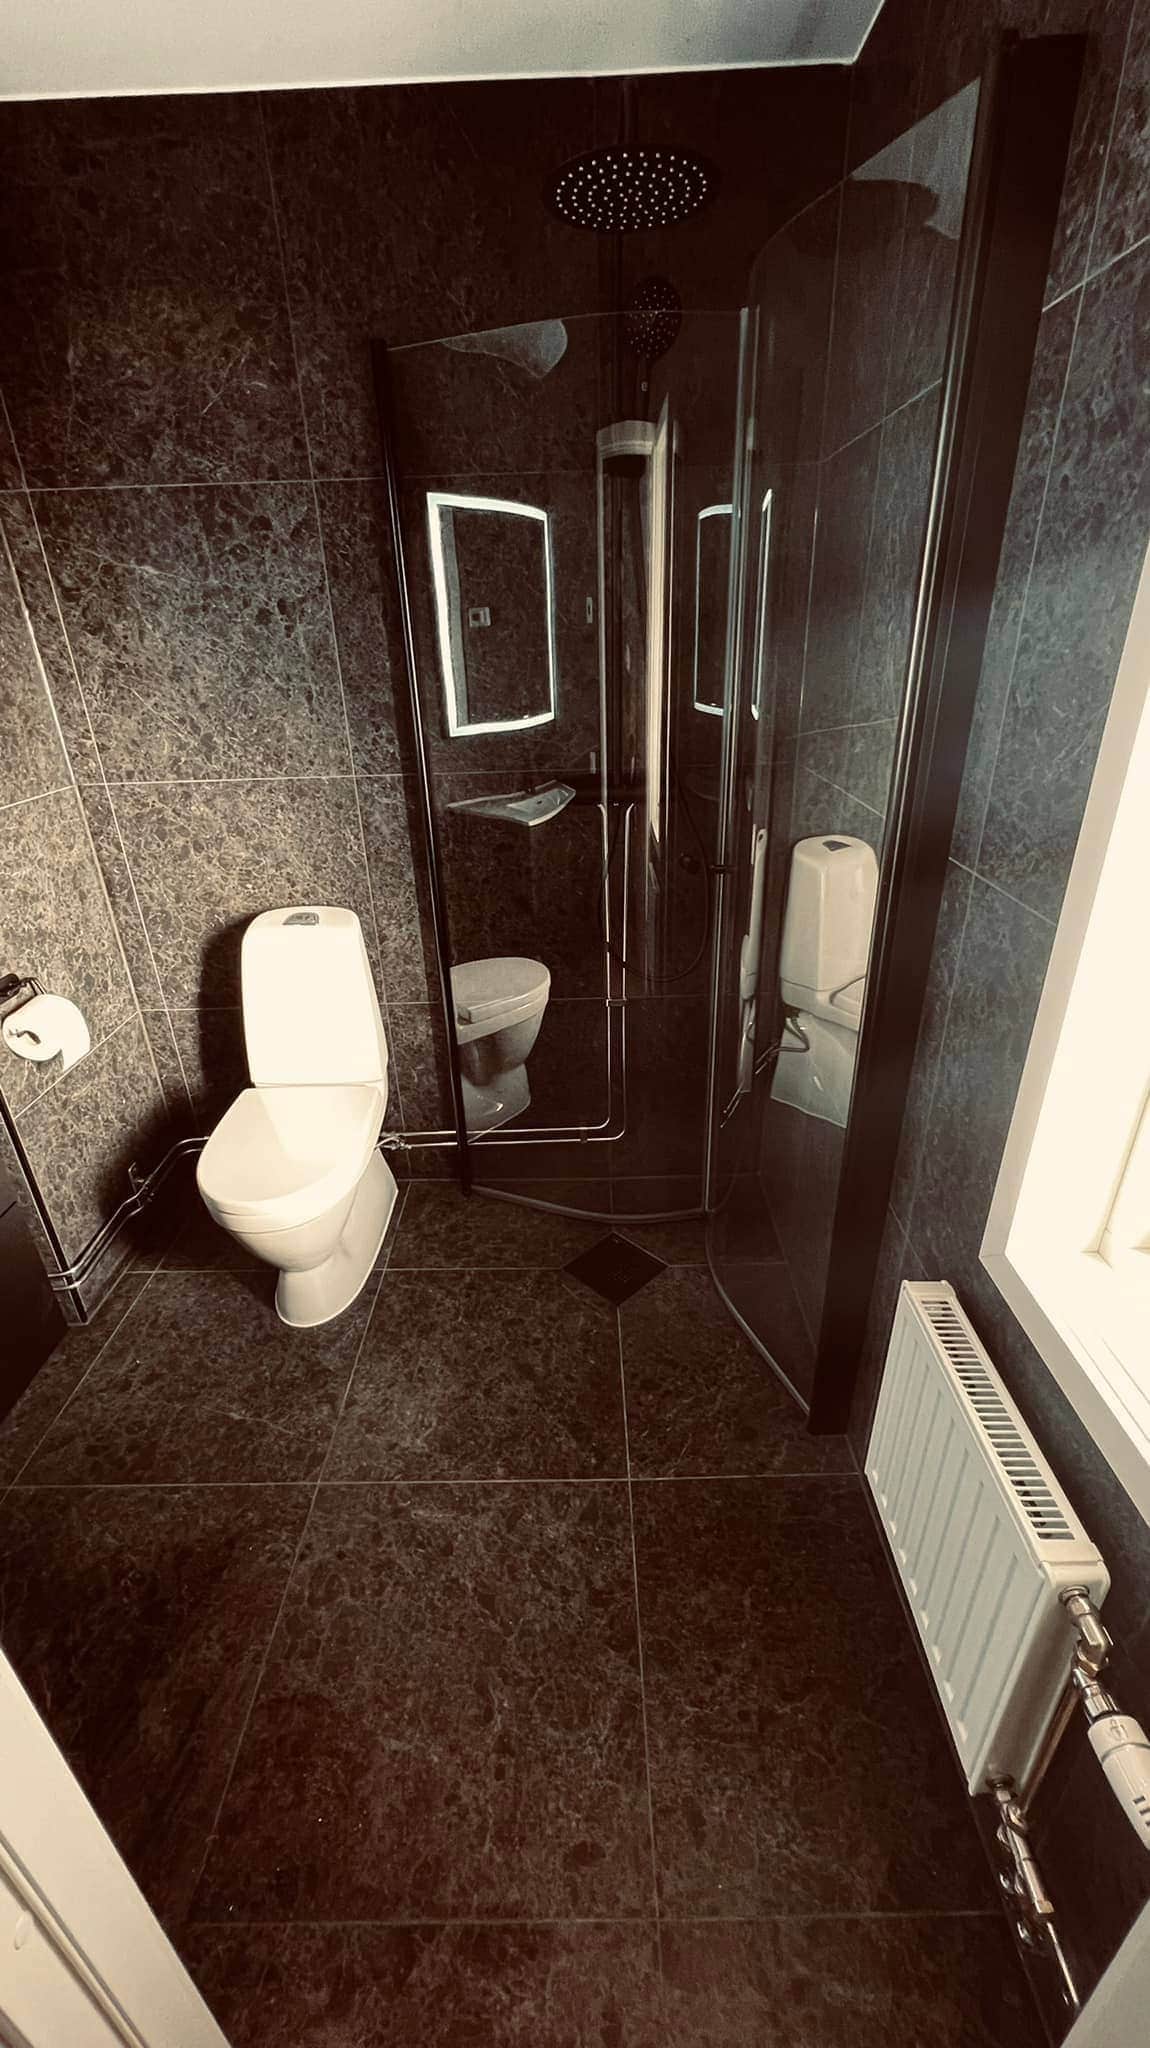 Referensjobb "Unikt badrum som sticker ut. Kunden nöjd, vi nöjda. 👍" utfört av Allbygg Trestad AB